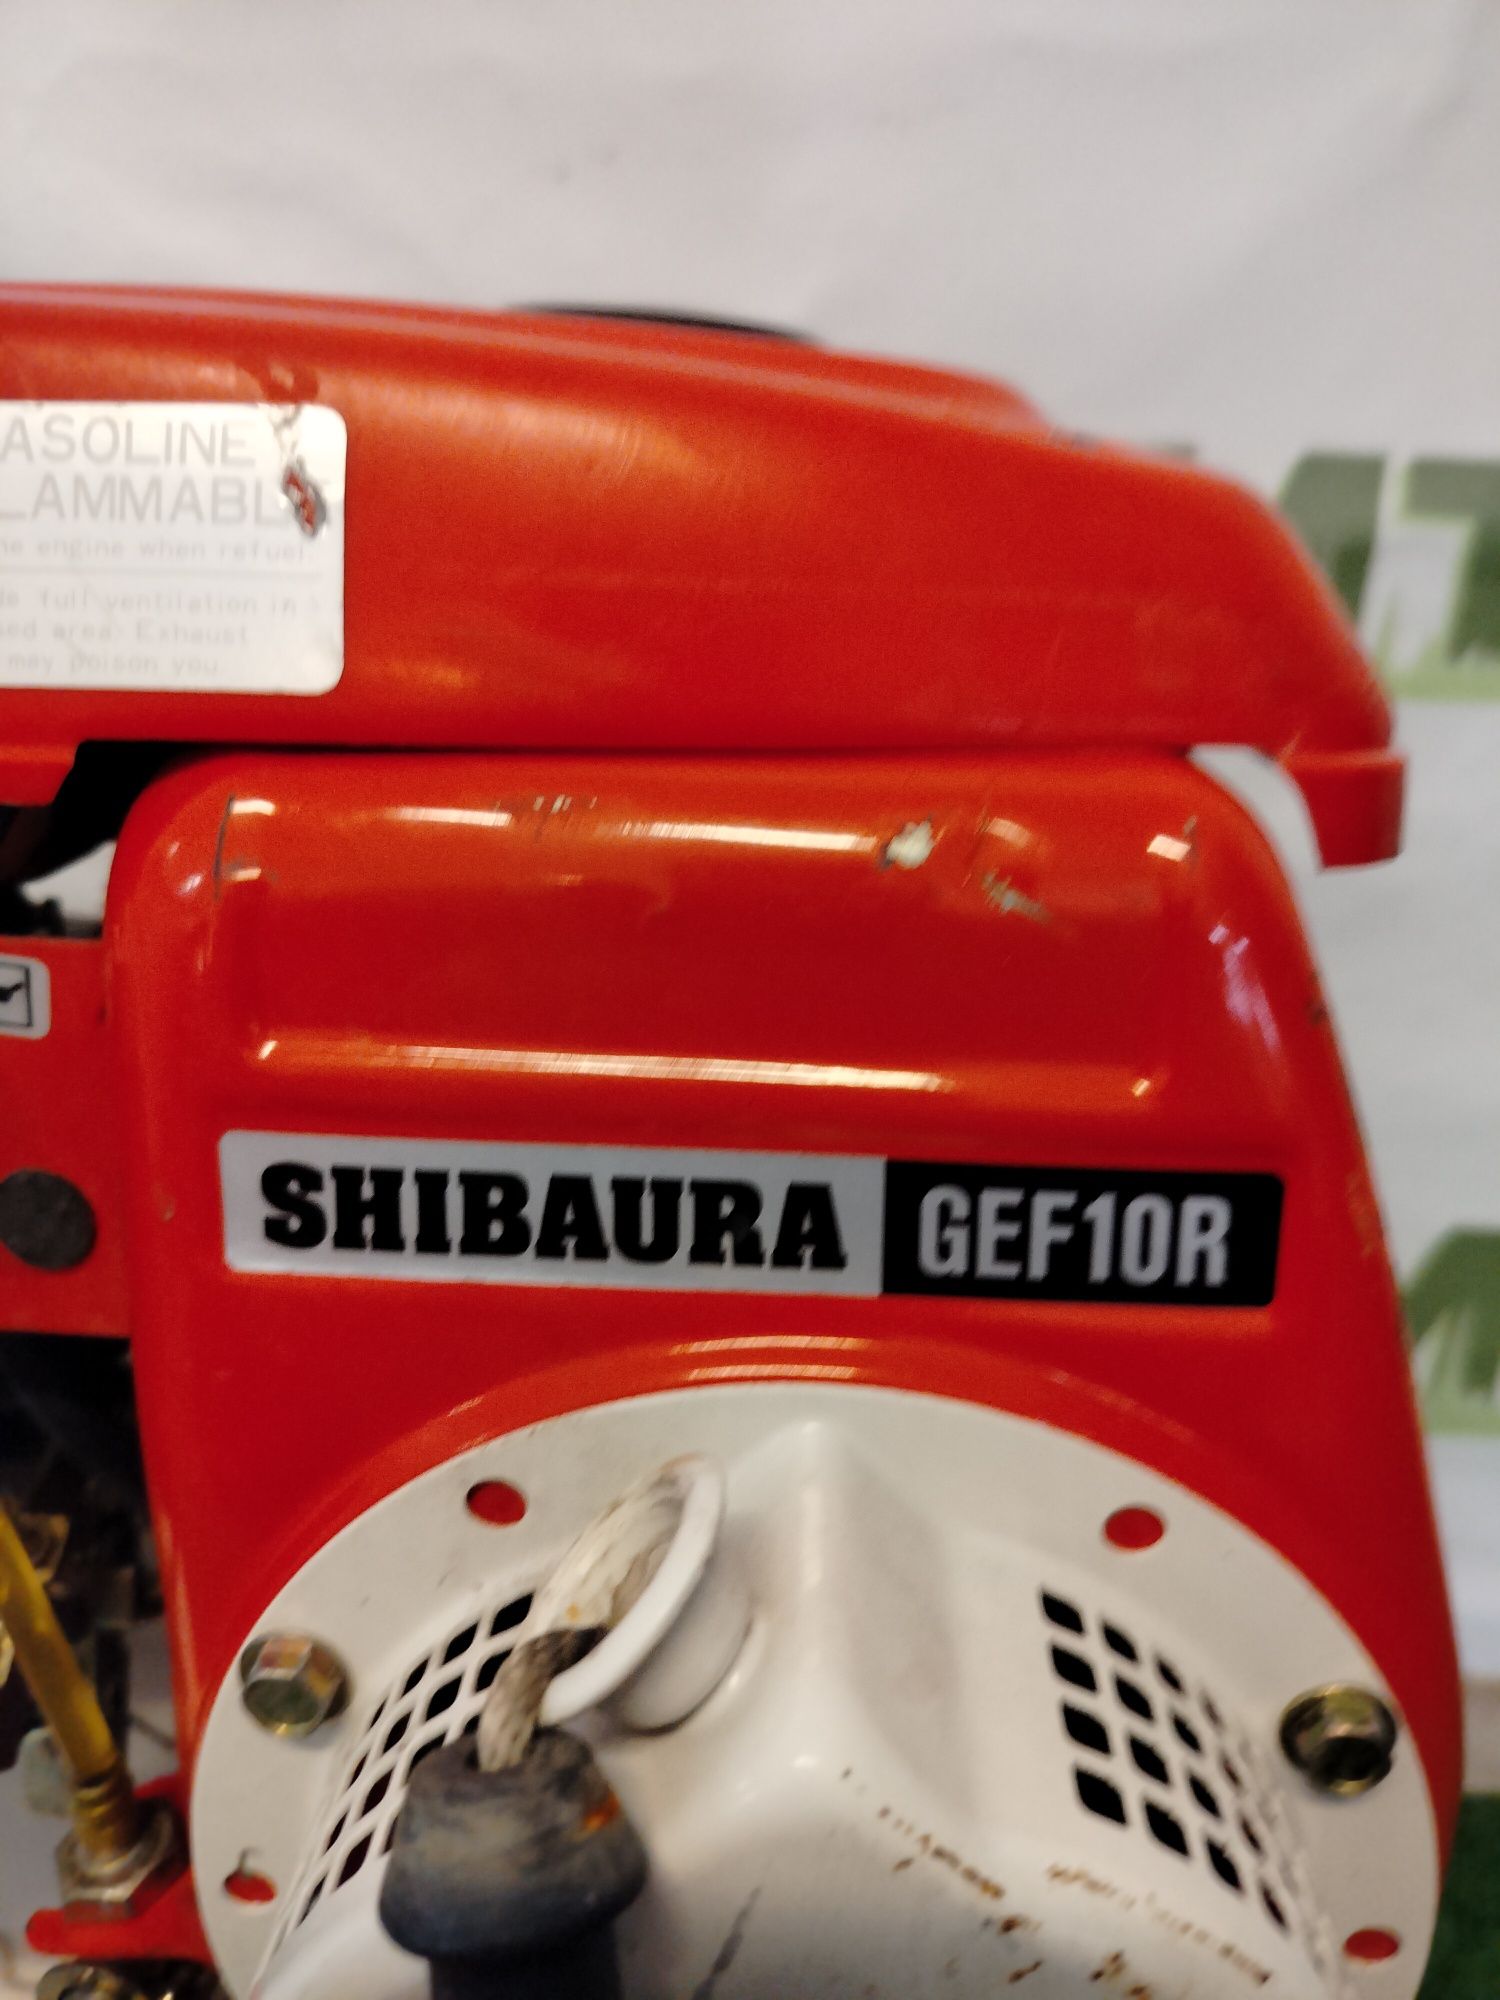 Glebogryzarka Spalinowa SHIBAURA GEF 10 R * JAPAN * K590